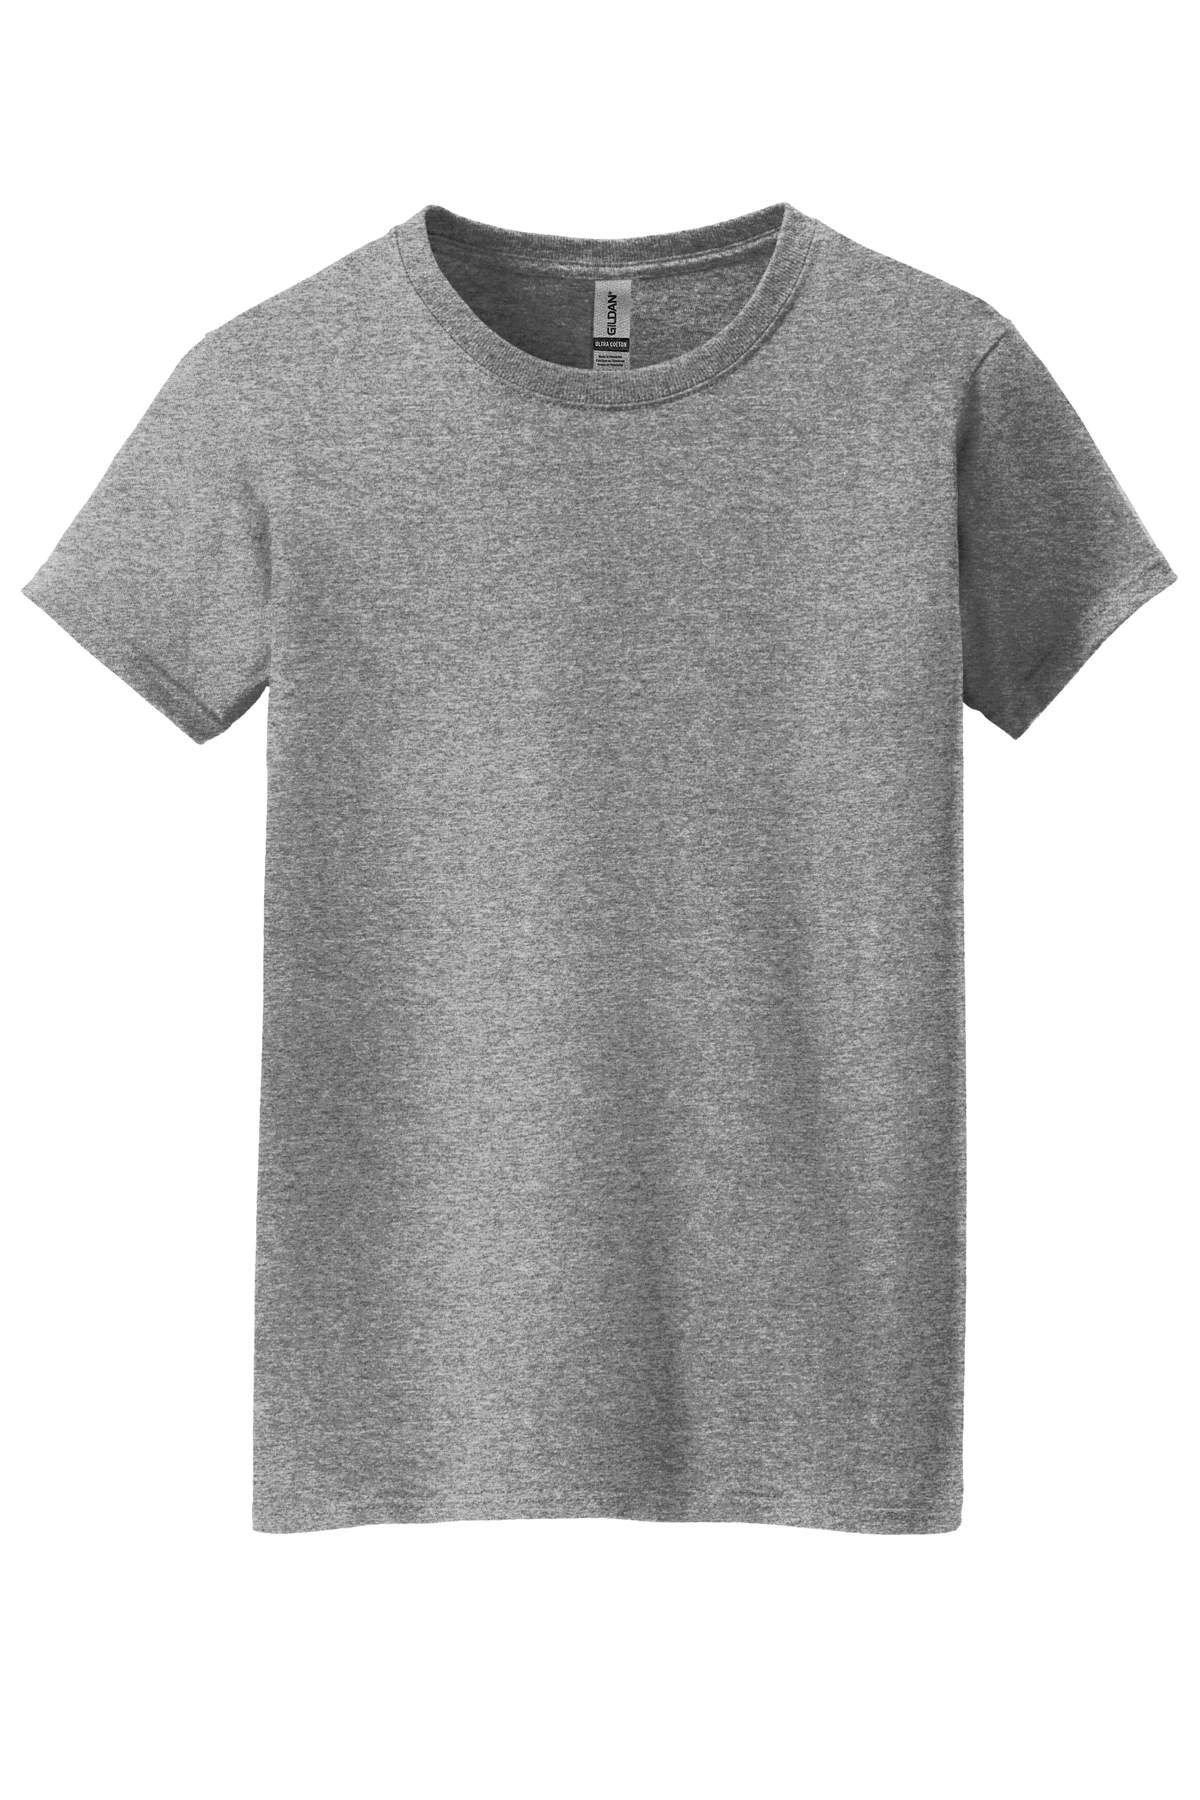 Gildan Ladies Heavy Cotton™ 100% Cotton T-Shirt | Product | SanMar